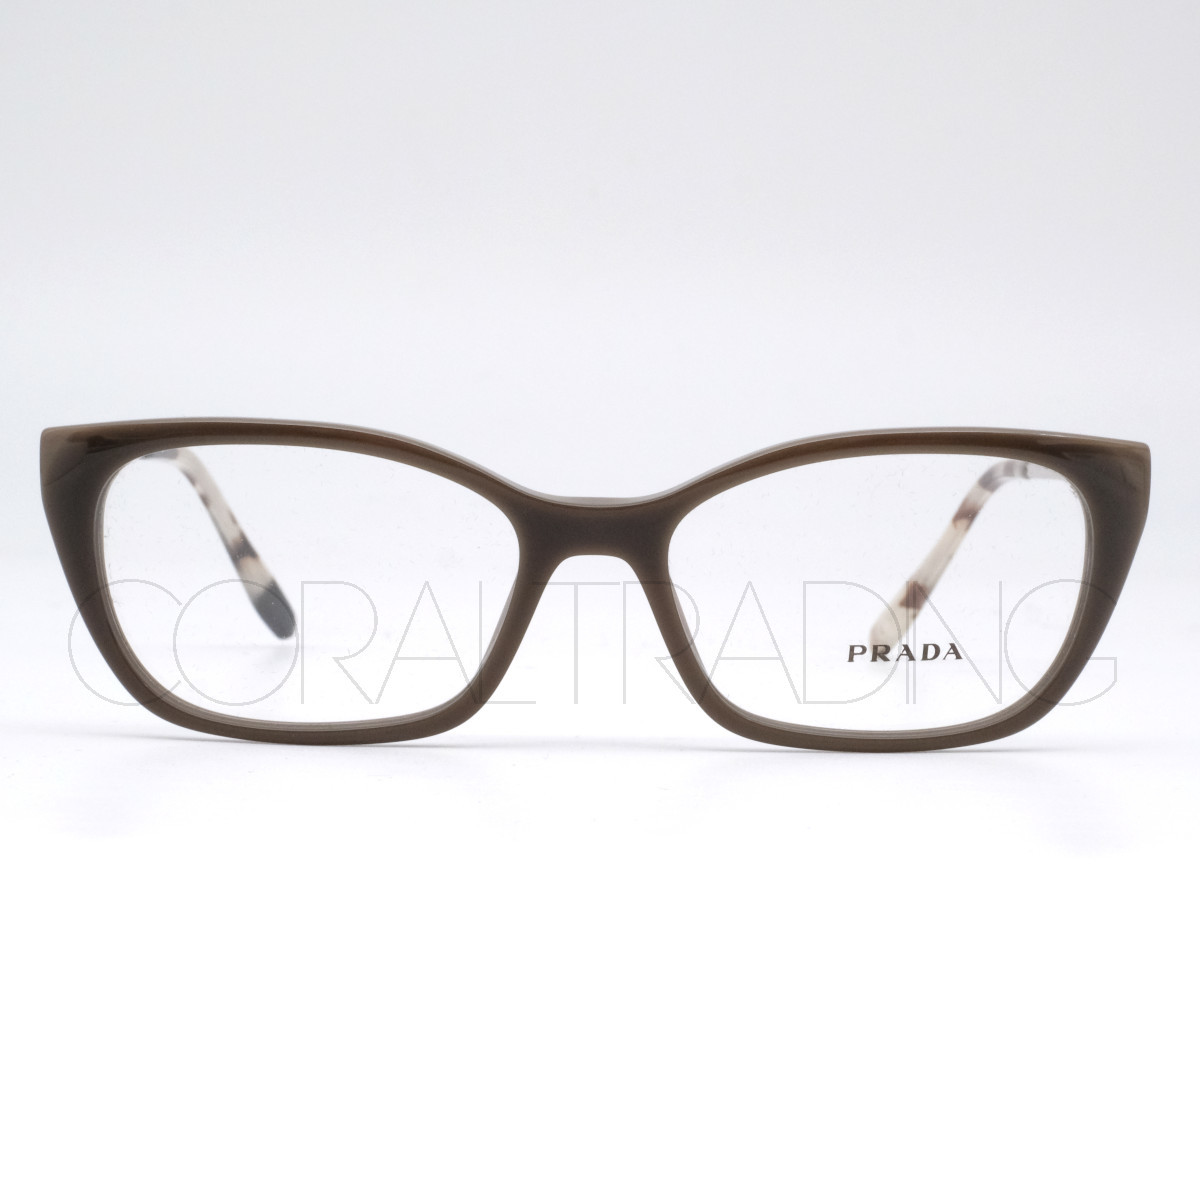 プラダ VPRX オパールグレー/シルバー メガネフレーム 眼鏡